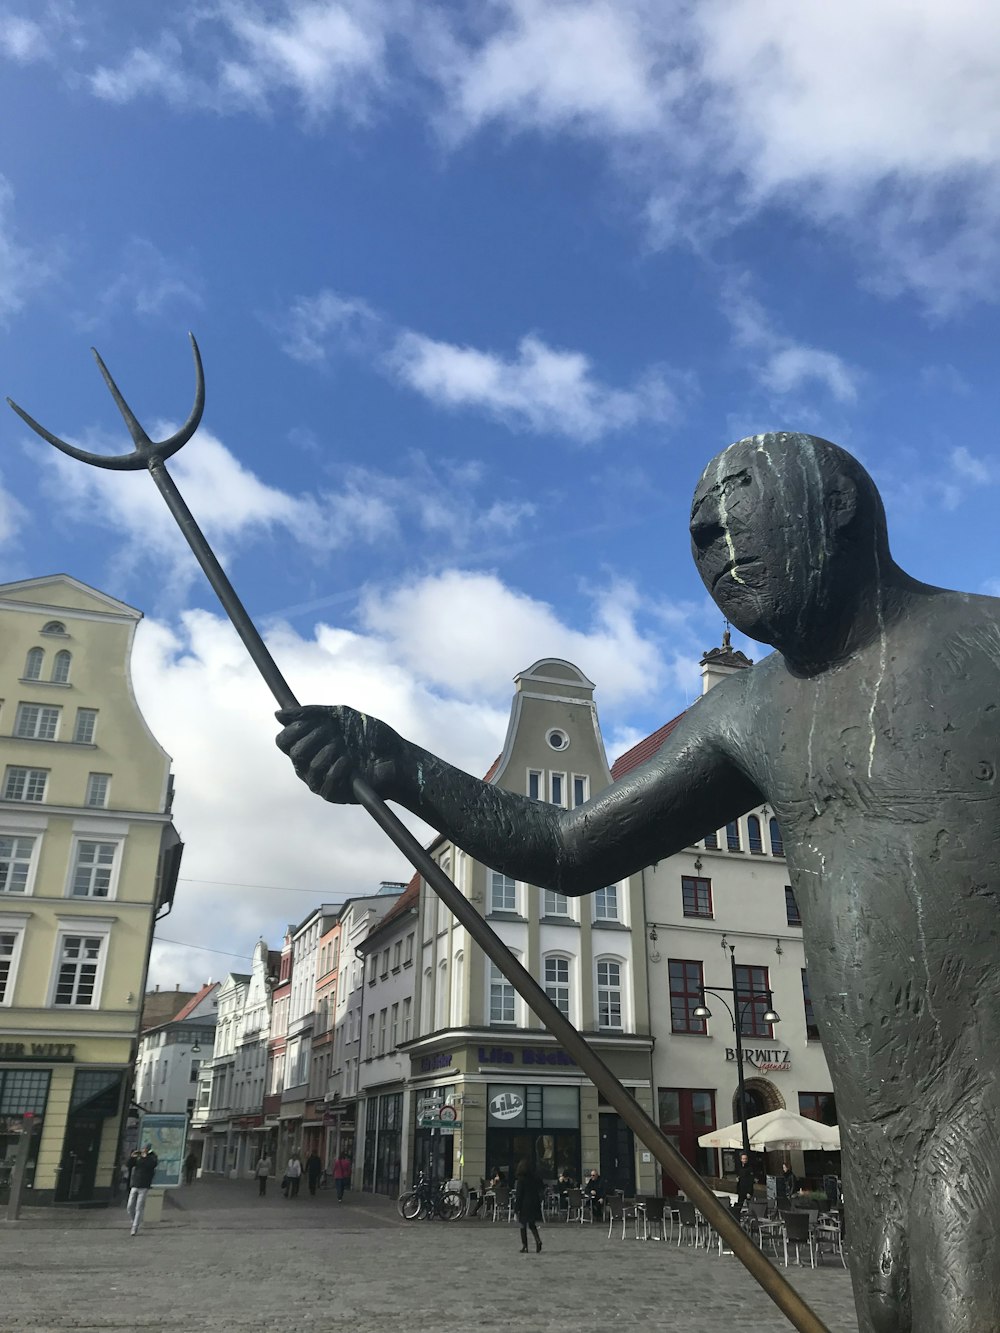 a statue of a man holding a pitchfork